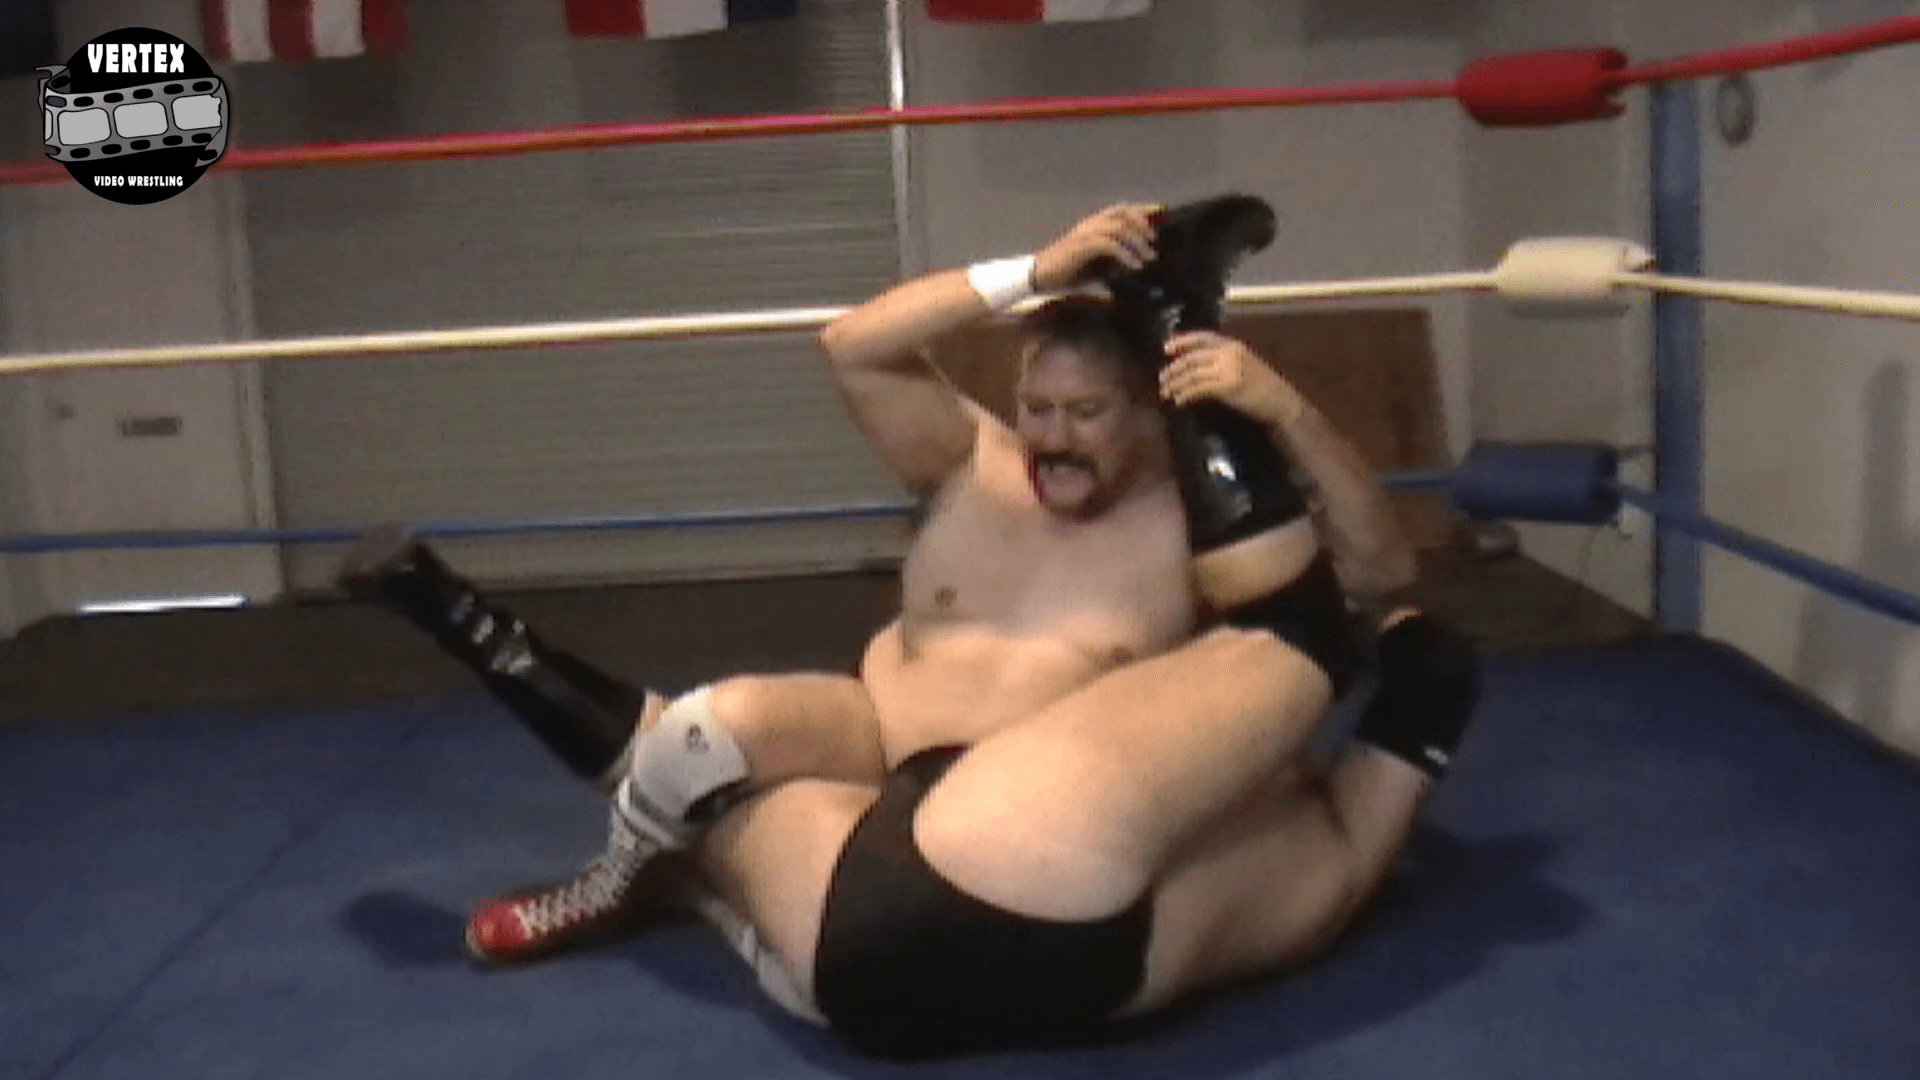 Barrio Bruiser vs Ursa Major: The Rematch - Vertex Wrestling